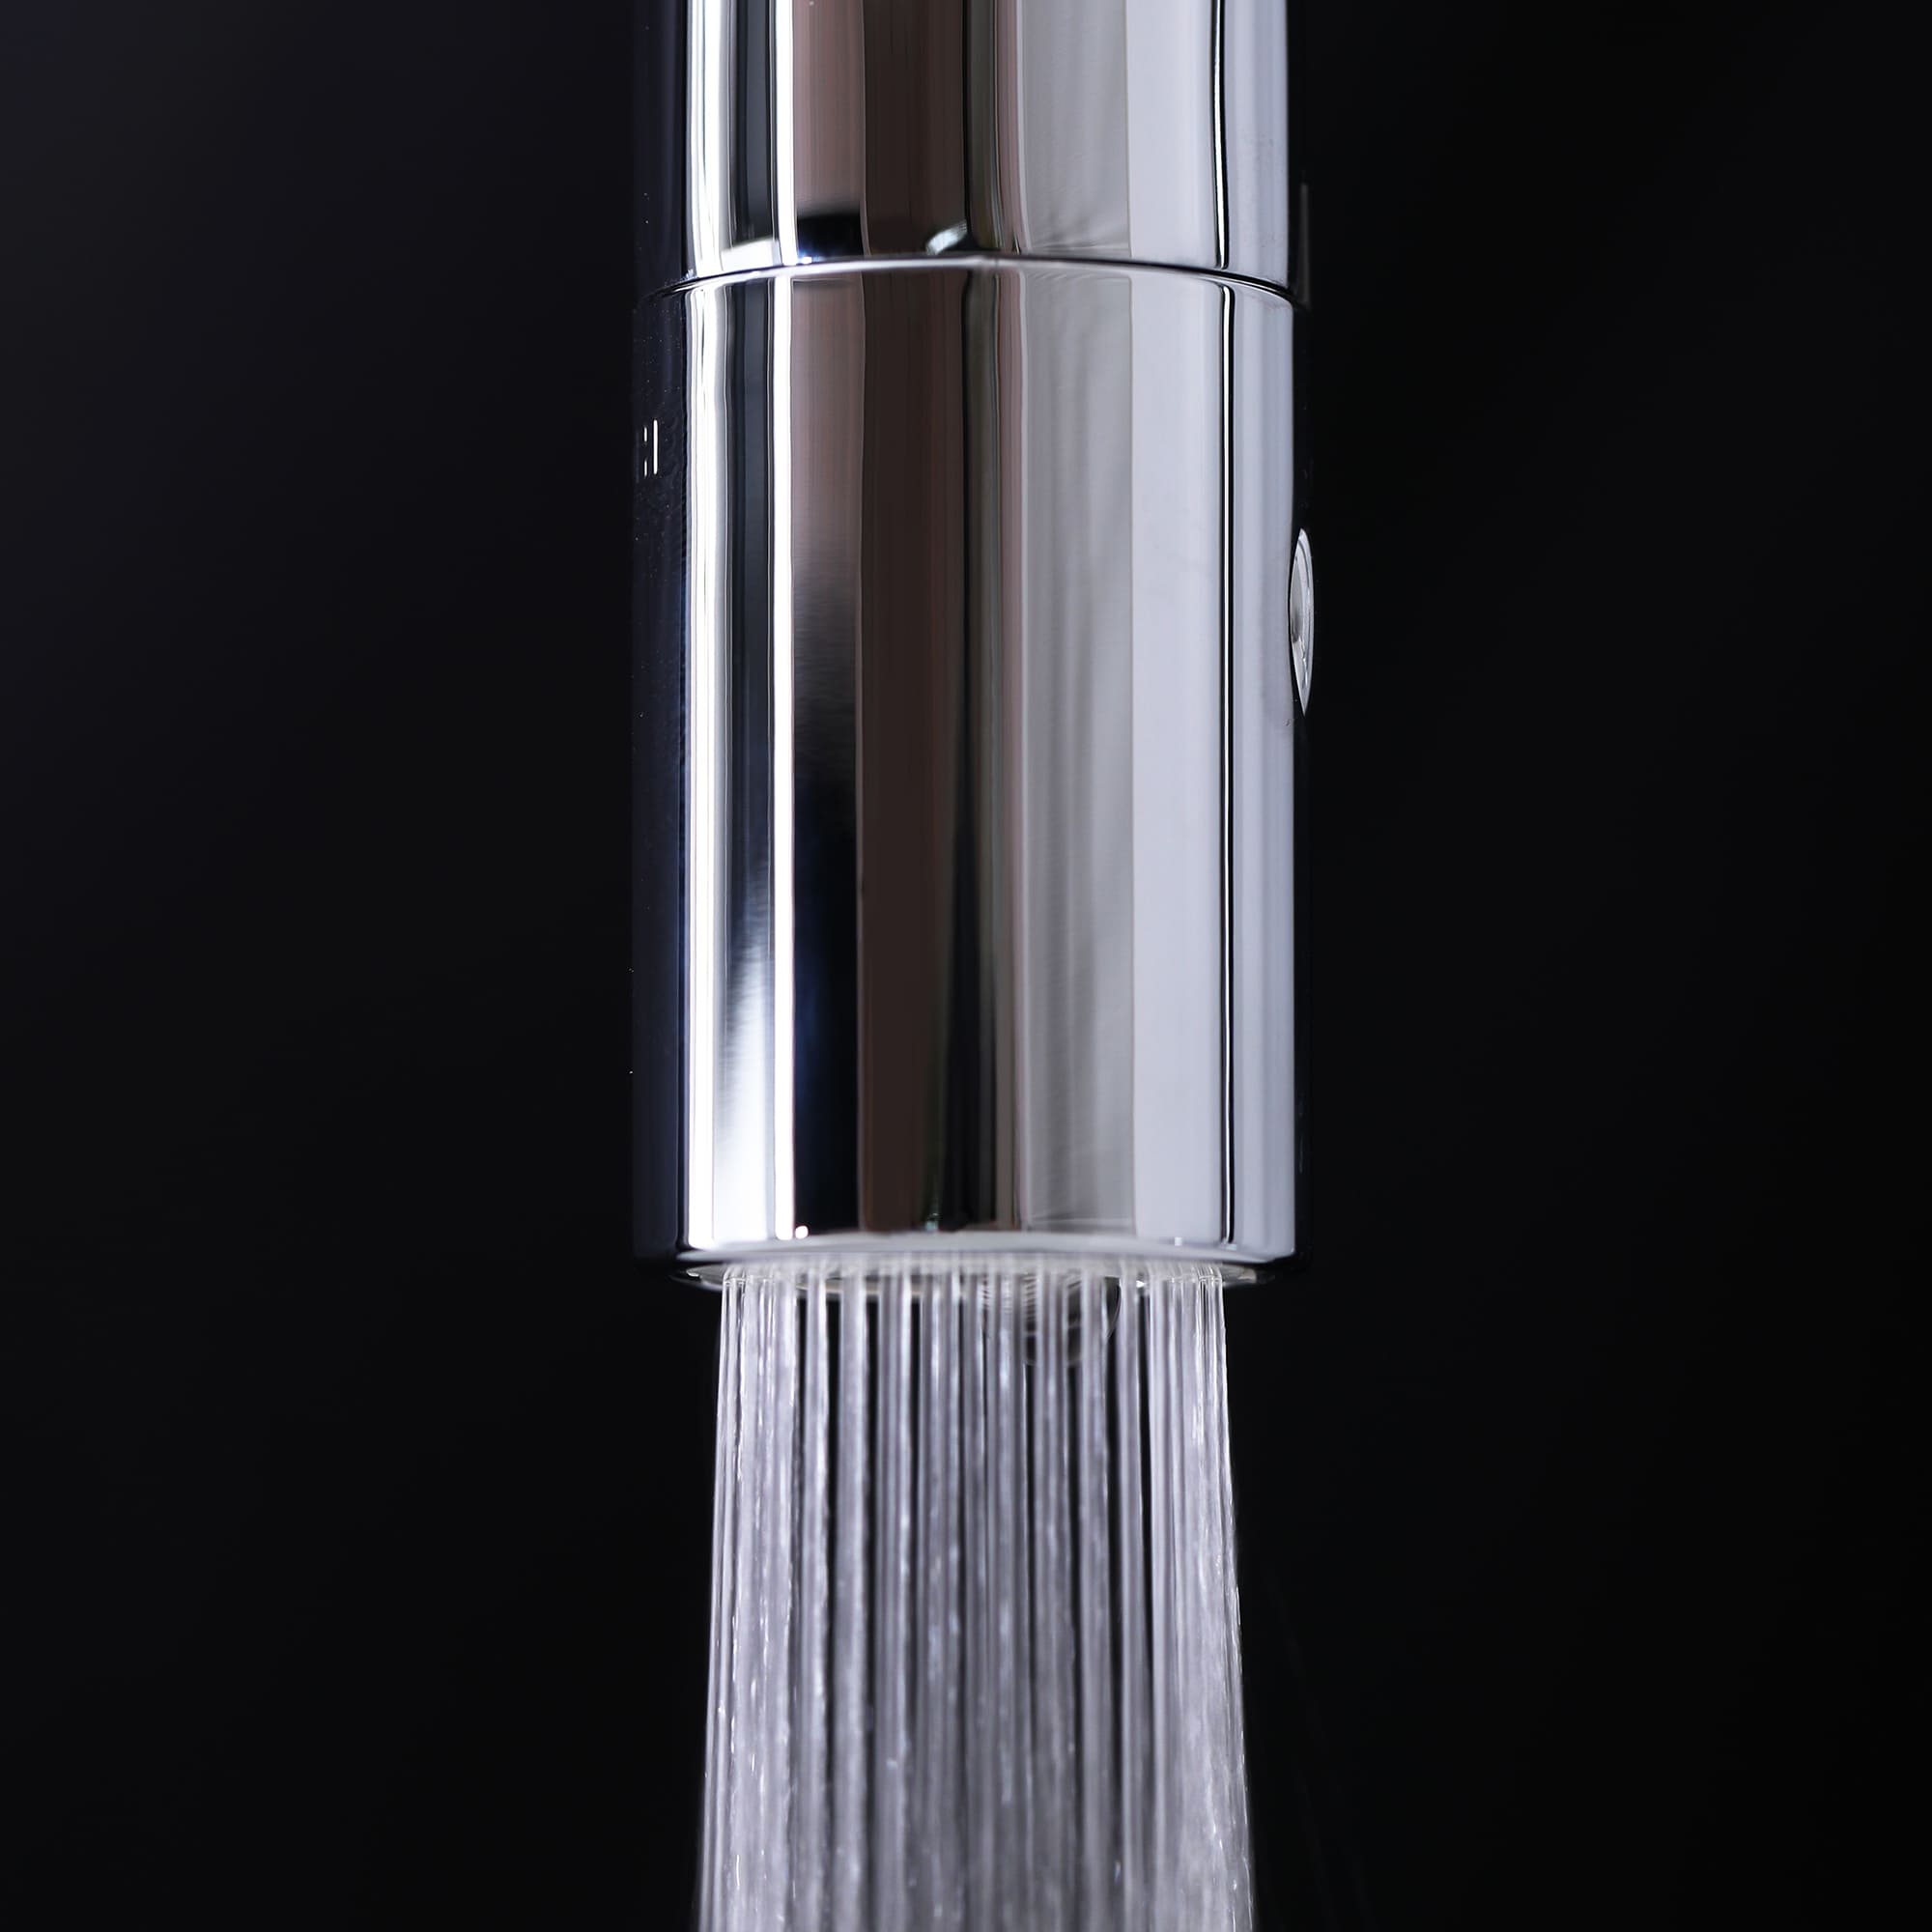 浄水器付き切替混合栓 グースネック クローム KB-PT002-15W-G201 シャワー